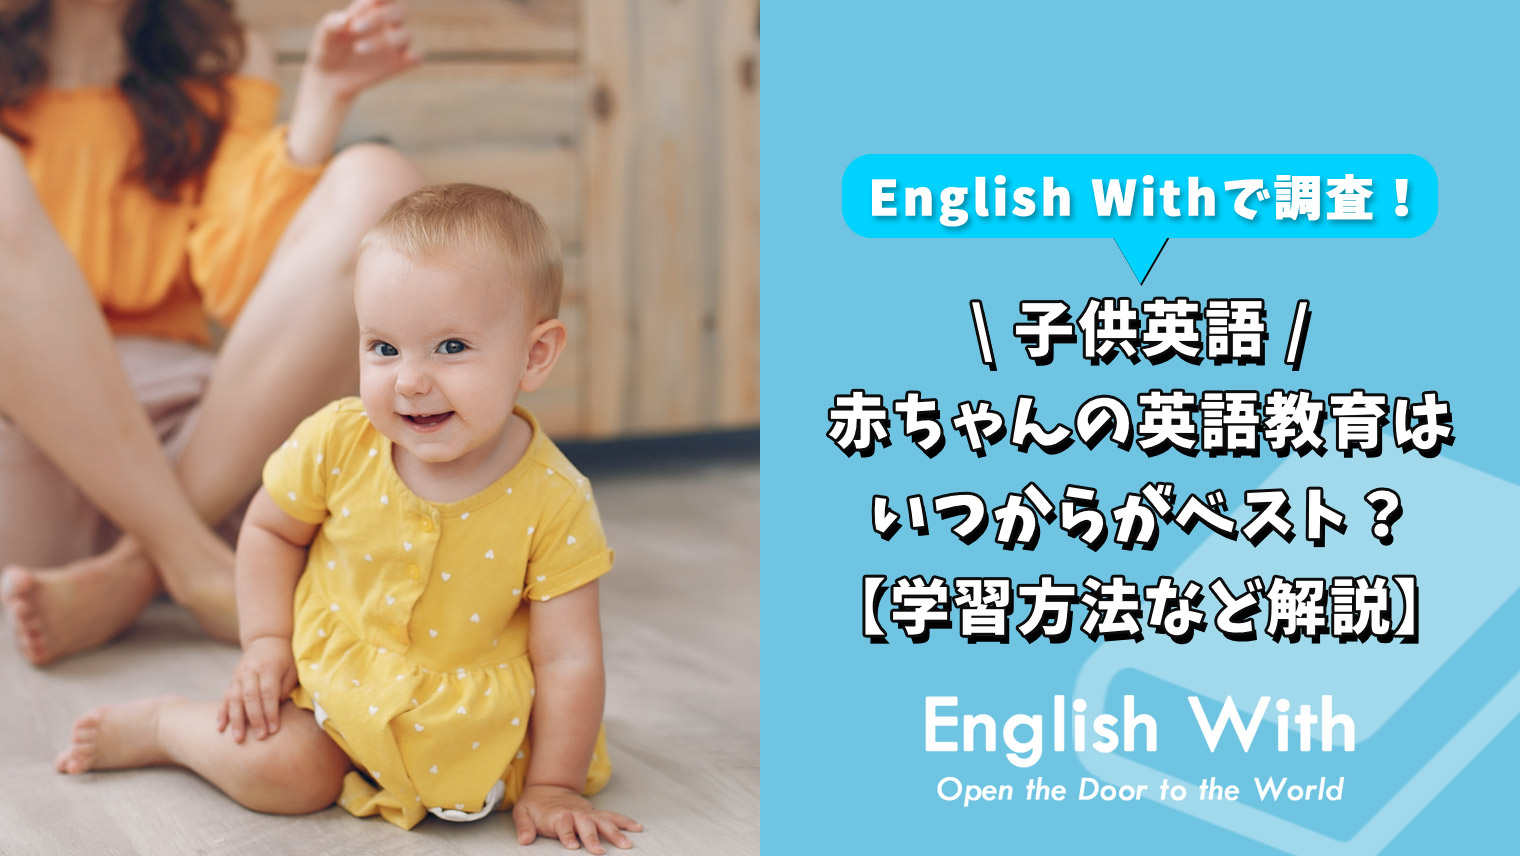 赤ちゃんの英語教育はいつからがベスト 学習方法など解説 おすすめ英会話 英語学習の比較 ランキング English With